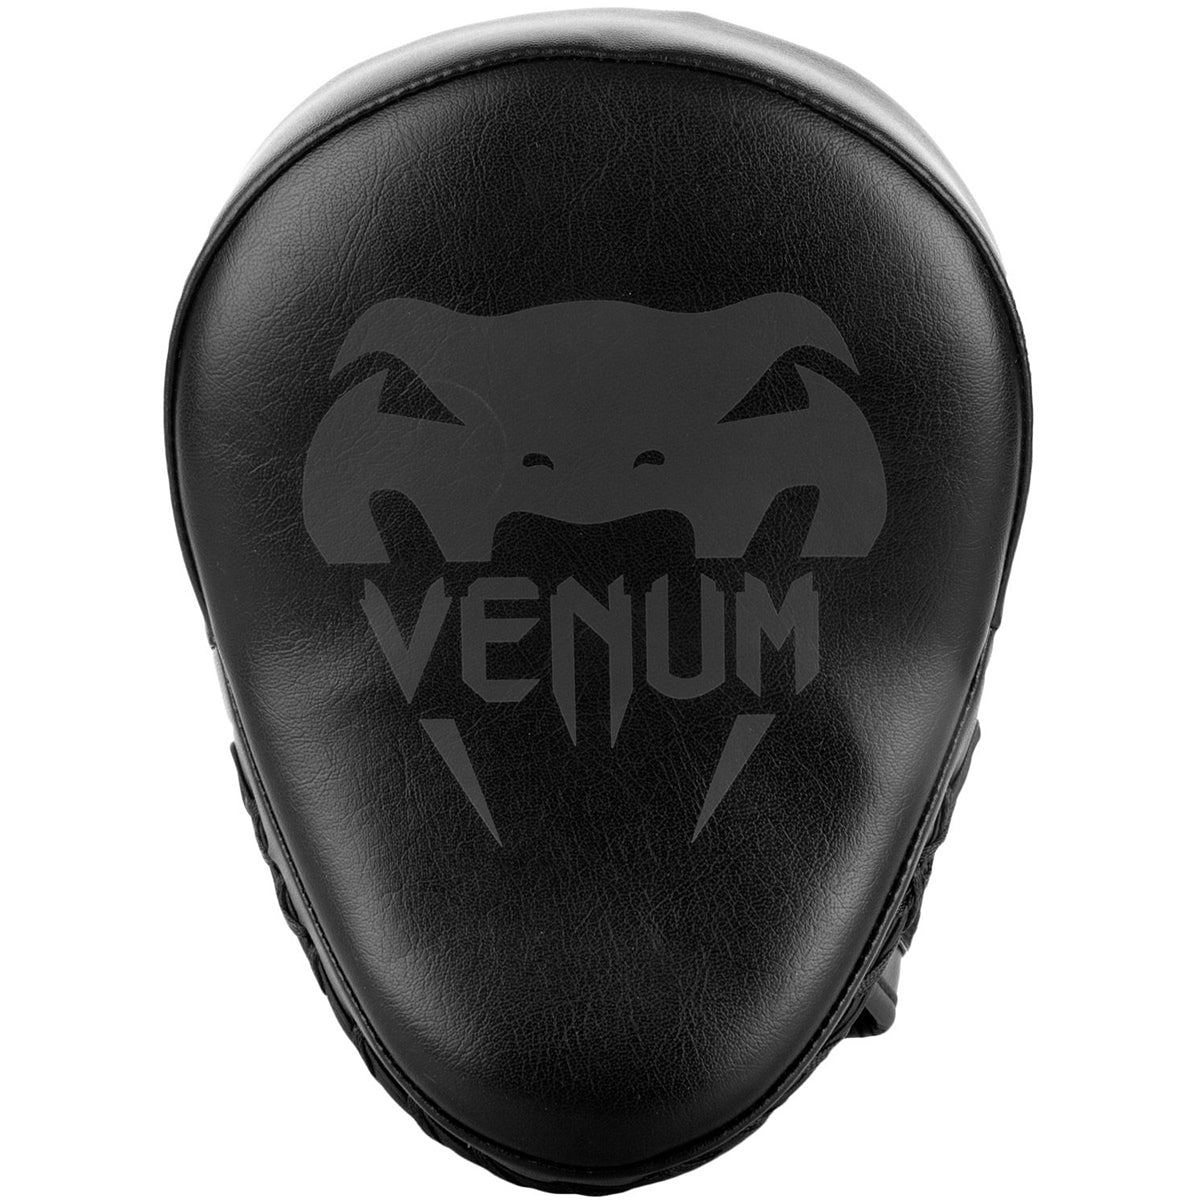 Venum Boxing and MMA Light Focus Mitts - Black/Black Venum